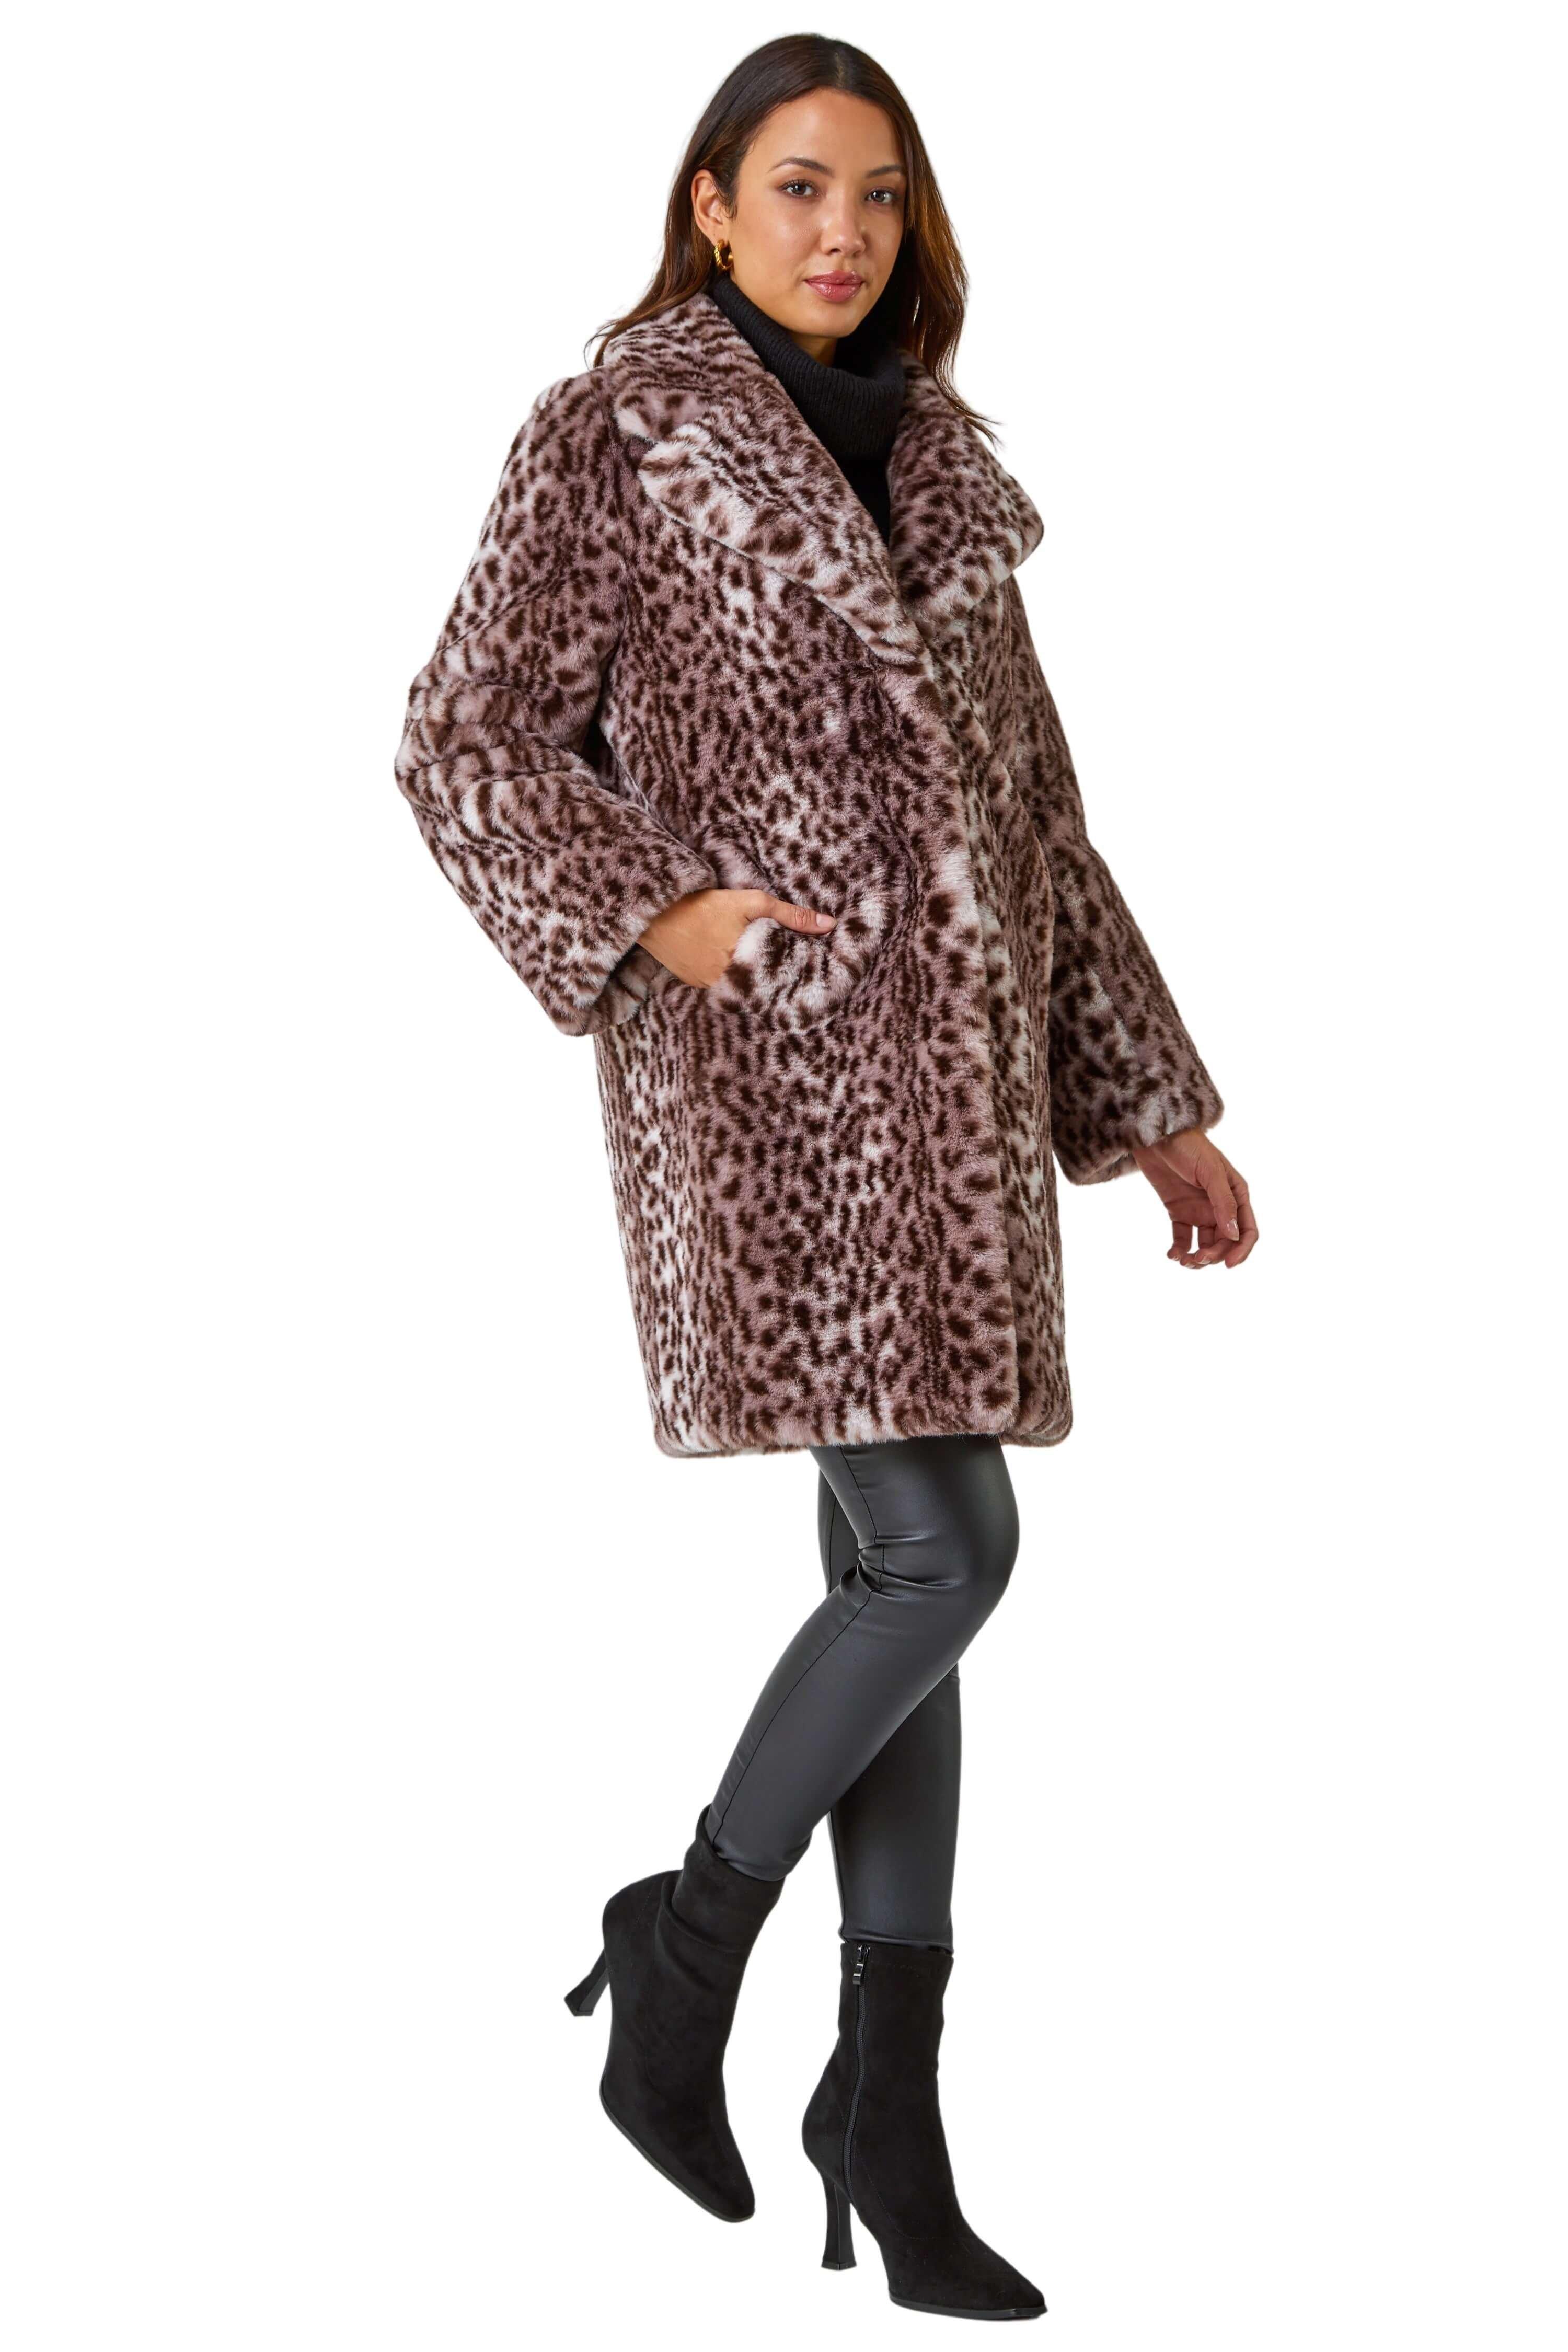 Пальто из искусственного меха премиум-класса с животным принтом Roman, бежевый дамская шуба пальто из искусственного лисьего меха костюм с черным леопардовым принтом длинная зимняя меховая куртка больших размеров в